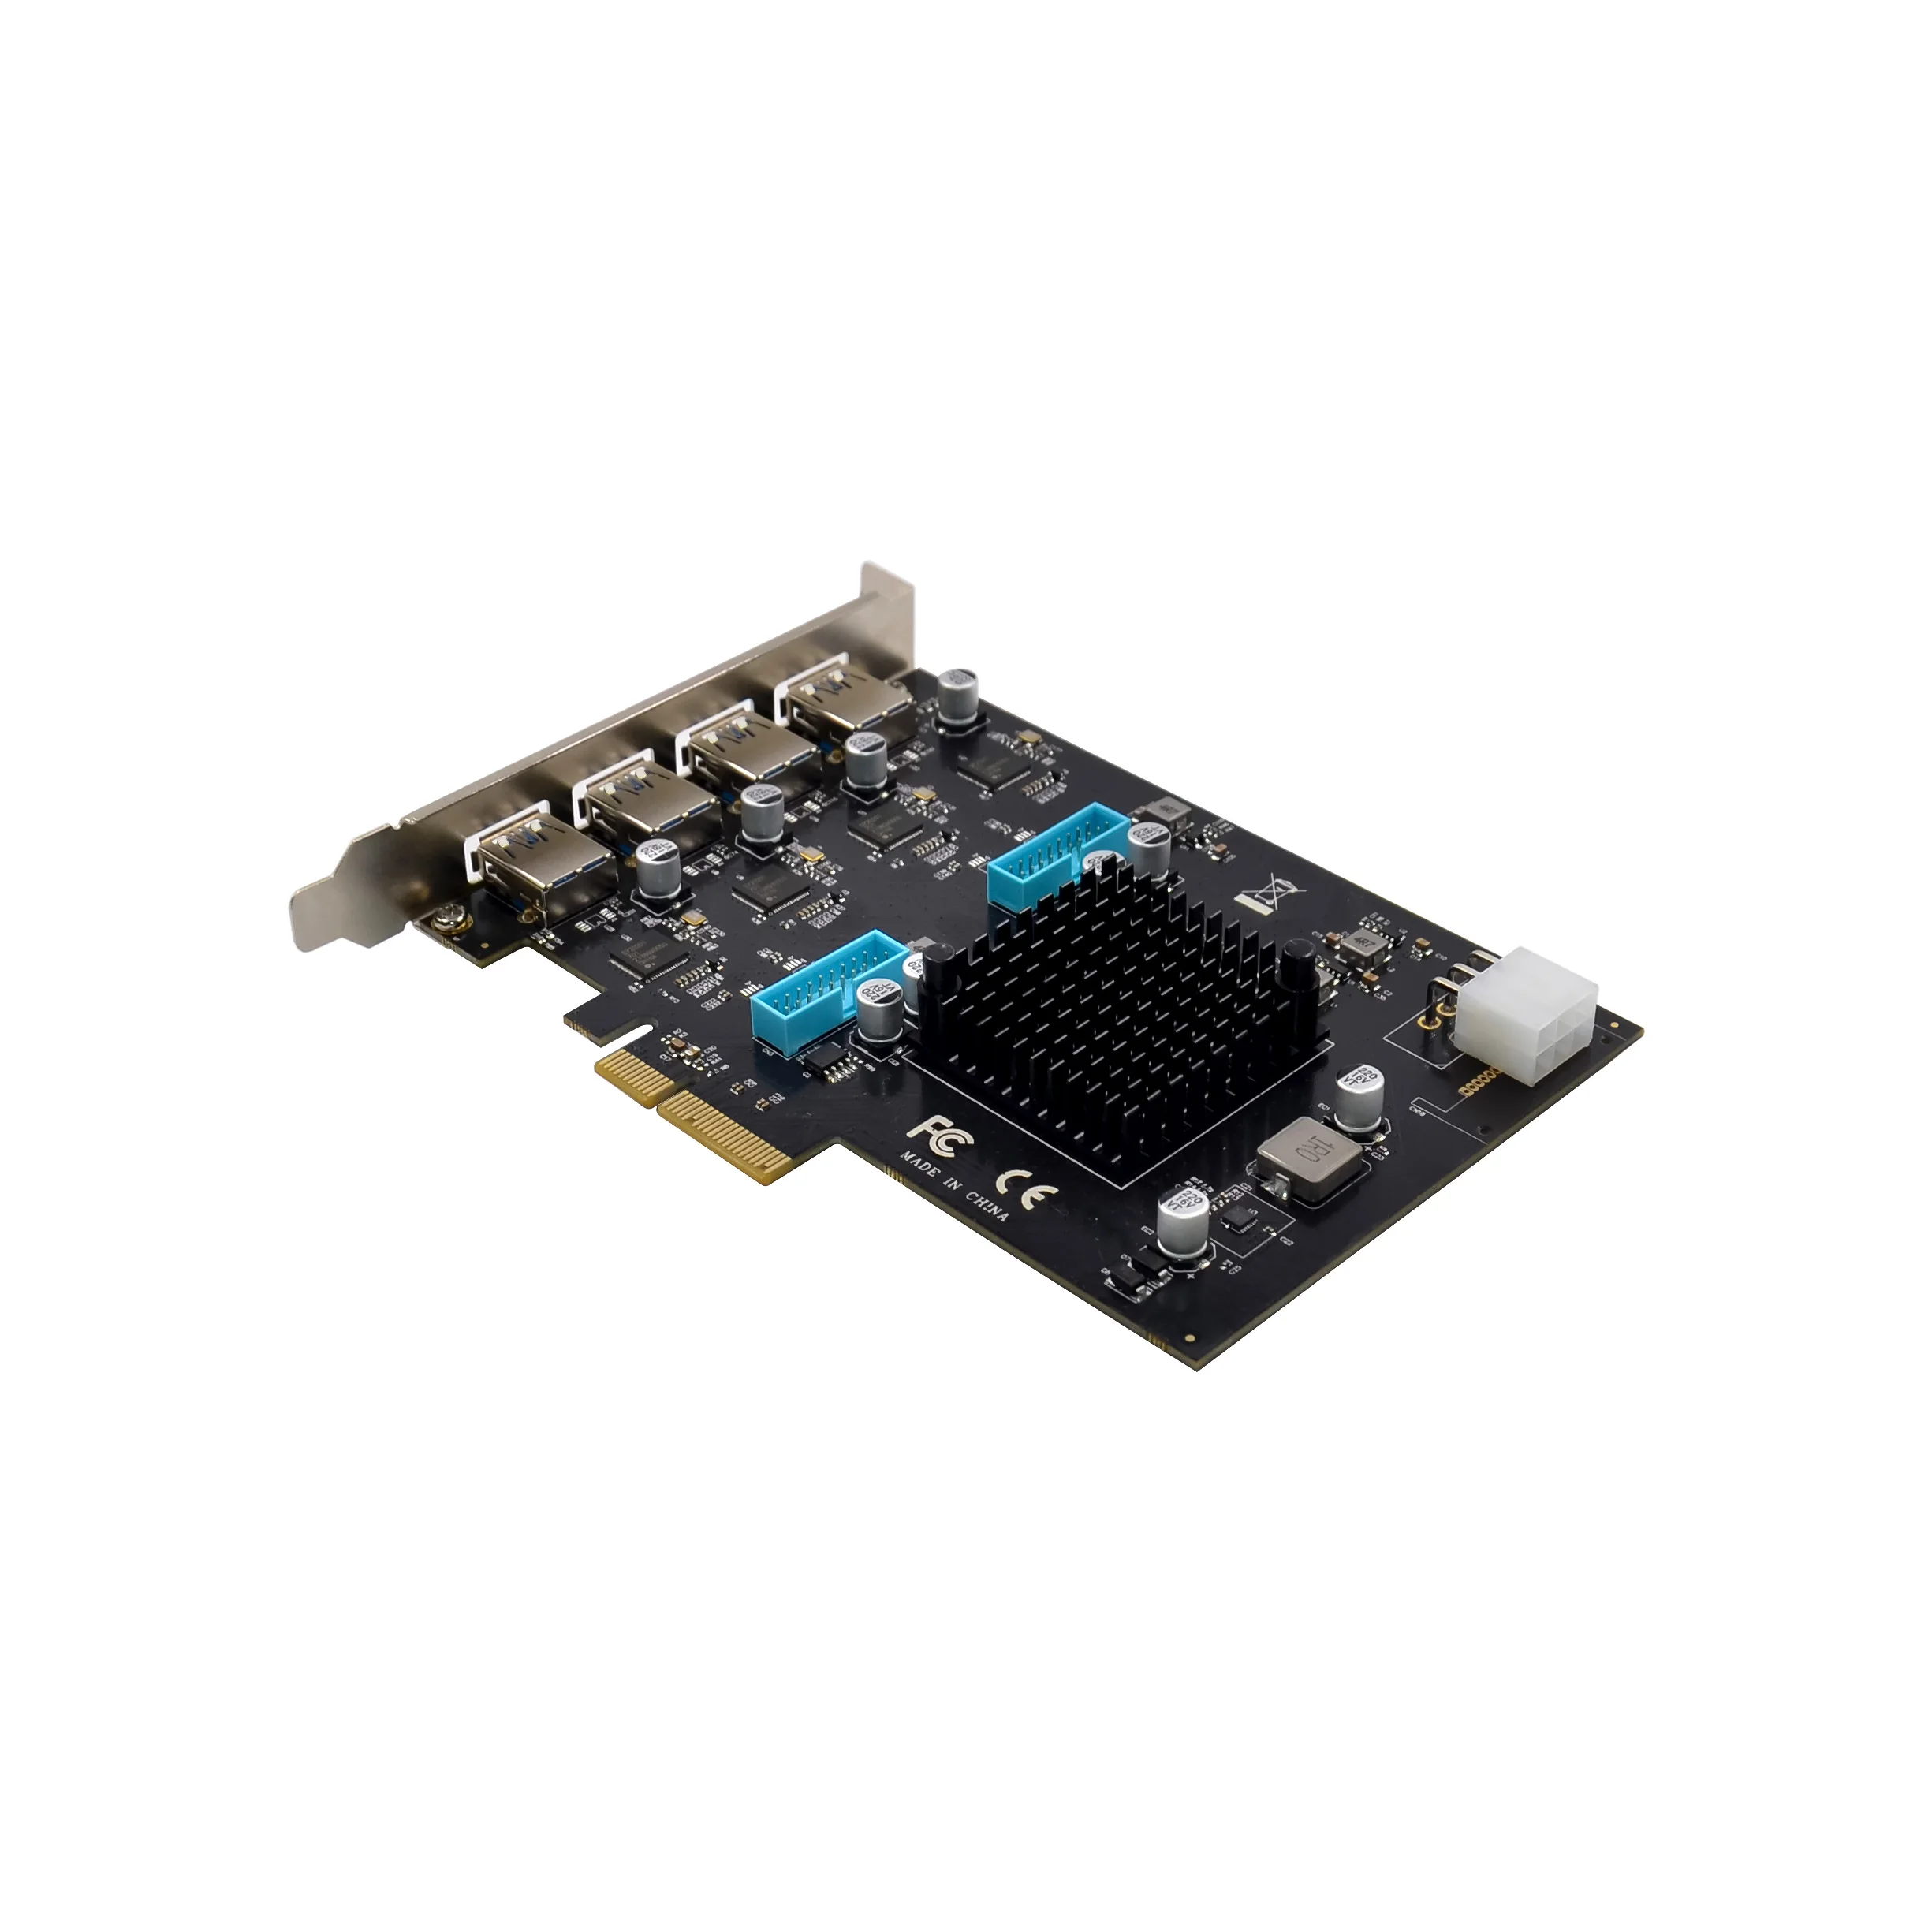 Прямая продажа с фабрики PCI-E X4 Gen2 встроенная карта внешняя карта 20 г/локон PCIe 4CH 8 Порт USB 3,0 Плата расширения